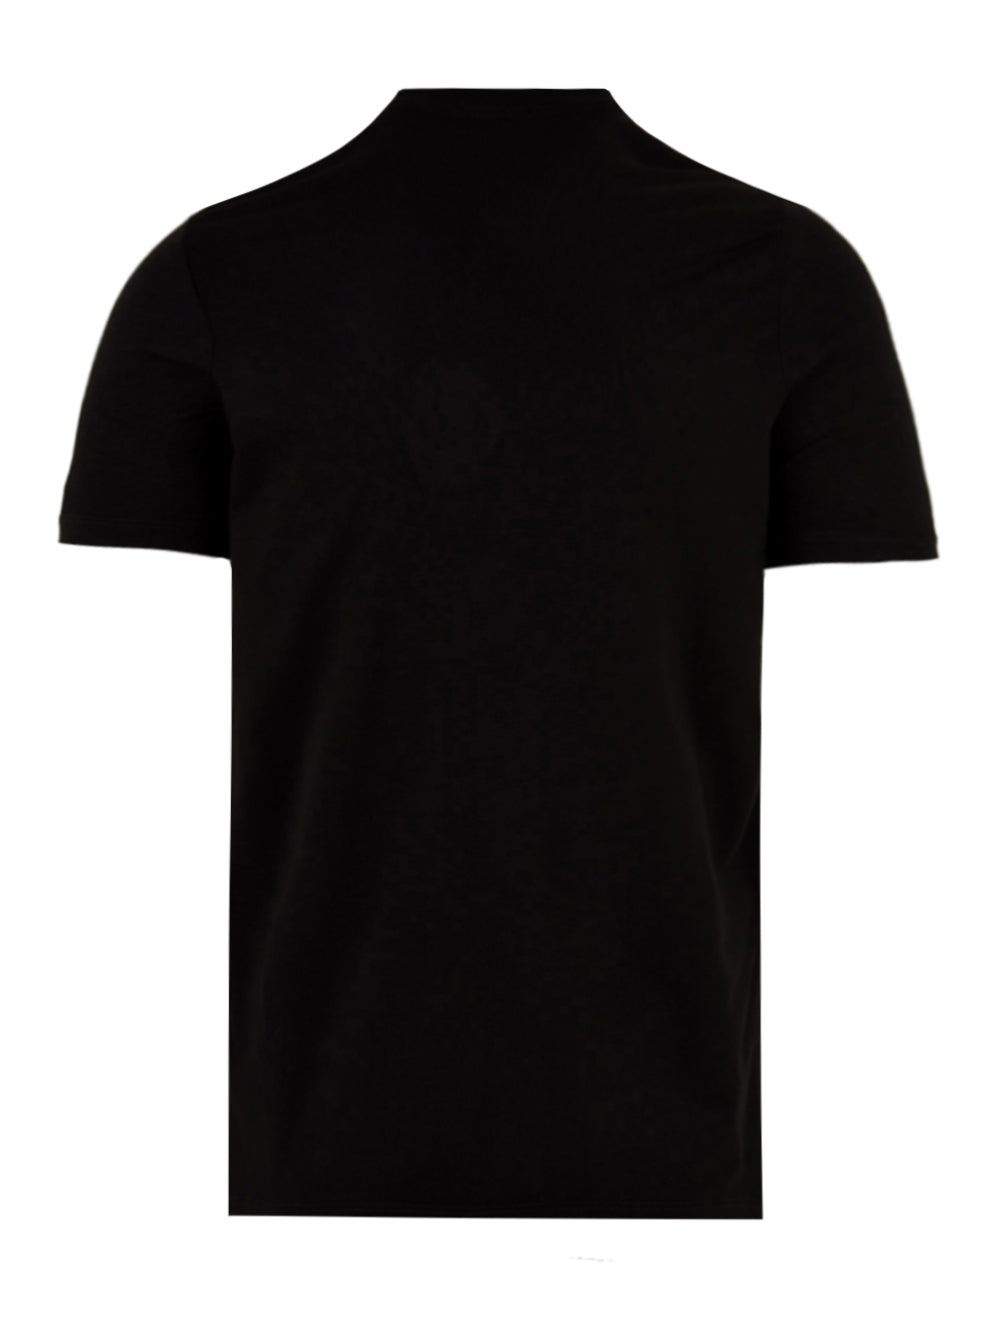 T-shirt intima Uomo Nera, realizzata in cotone, a girocollo